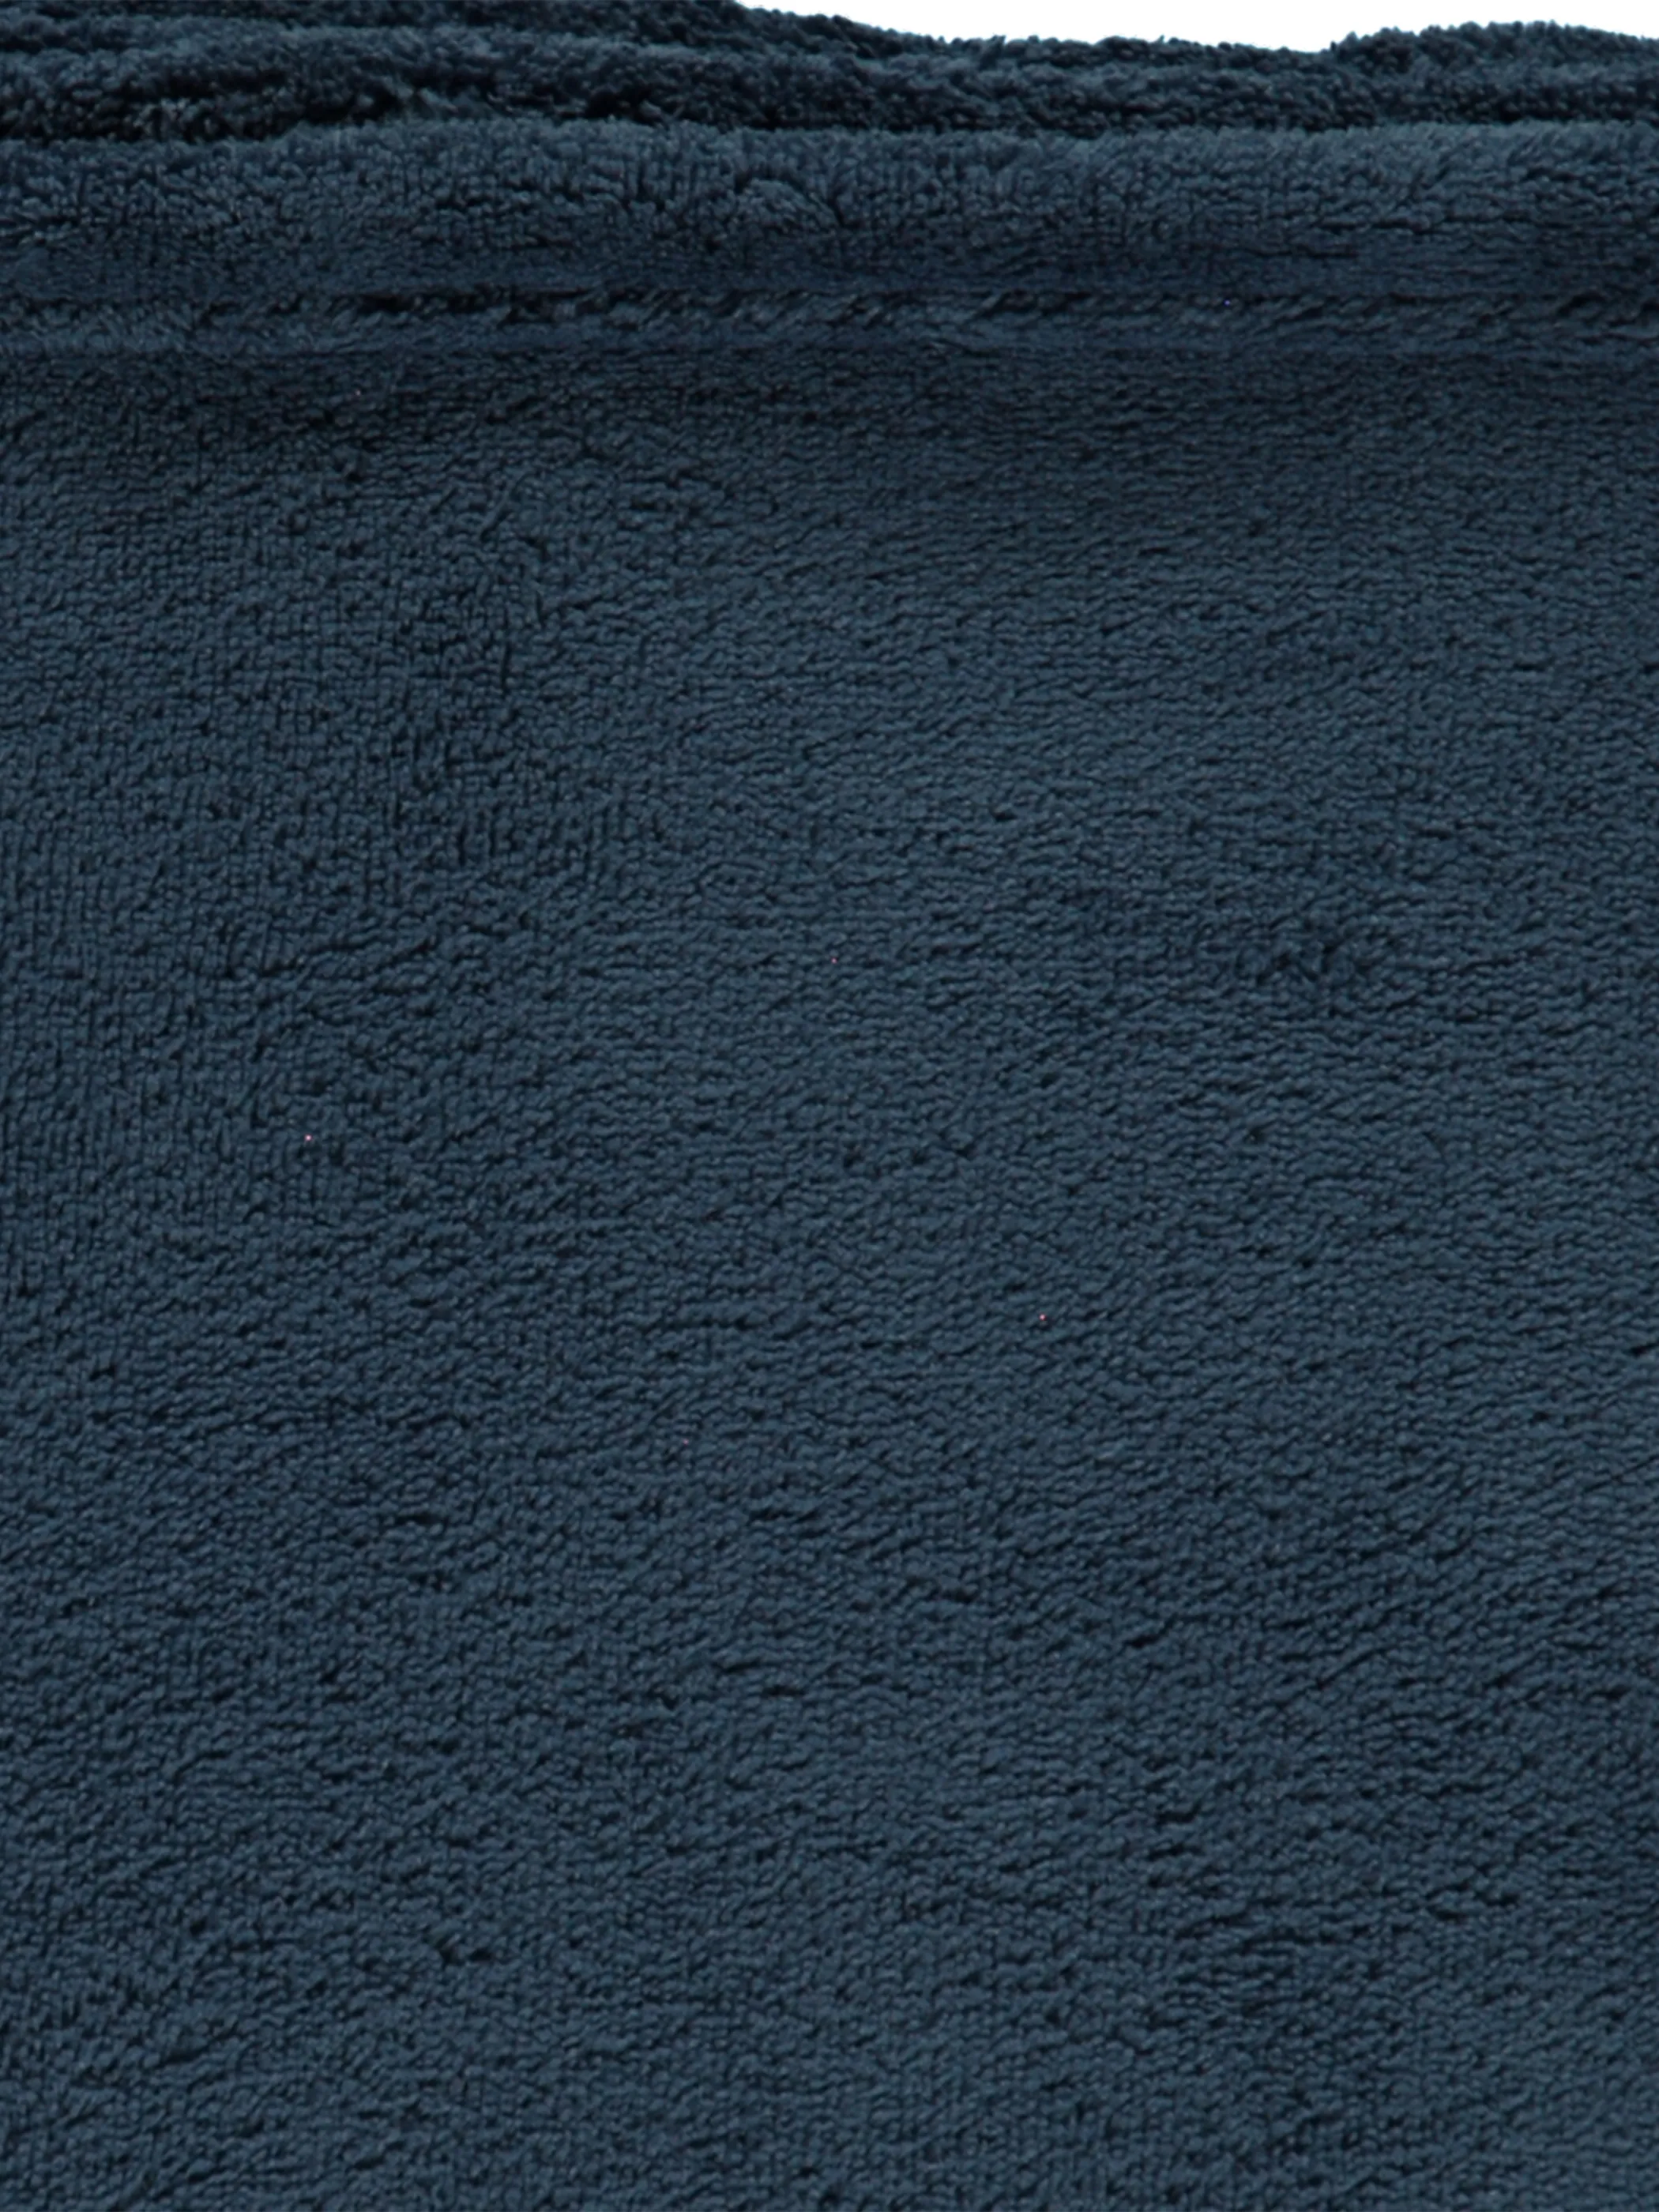 Coral Fleece Decke 150x200cm Blau 850139 DENIM BLAU 3